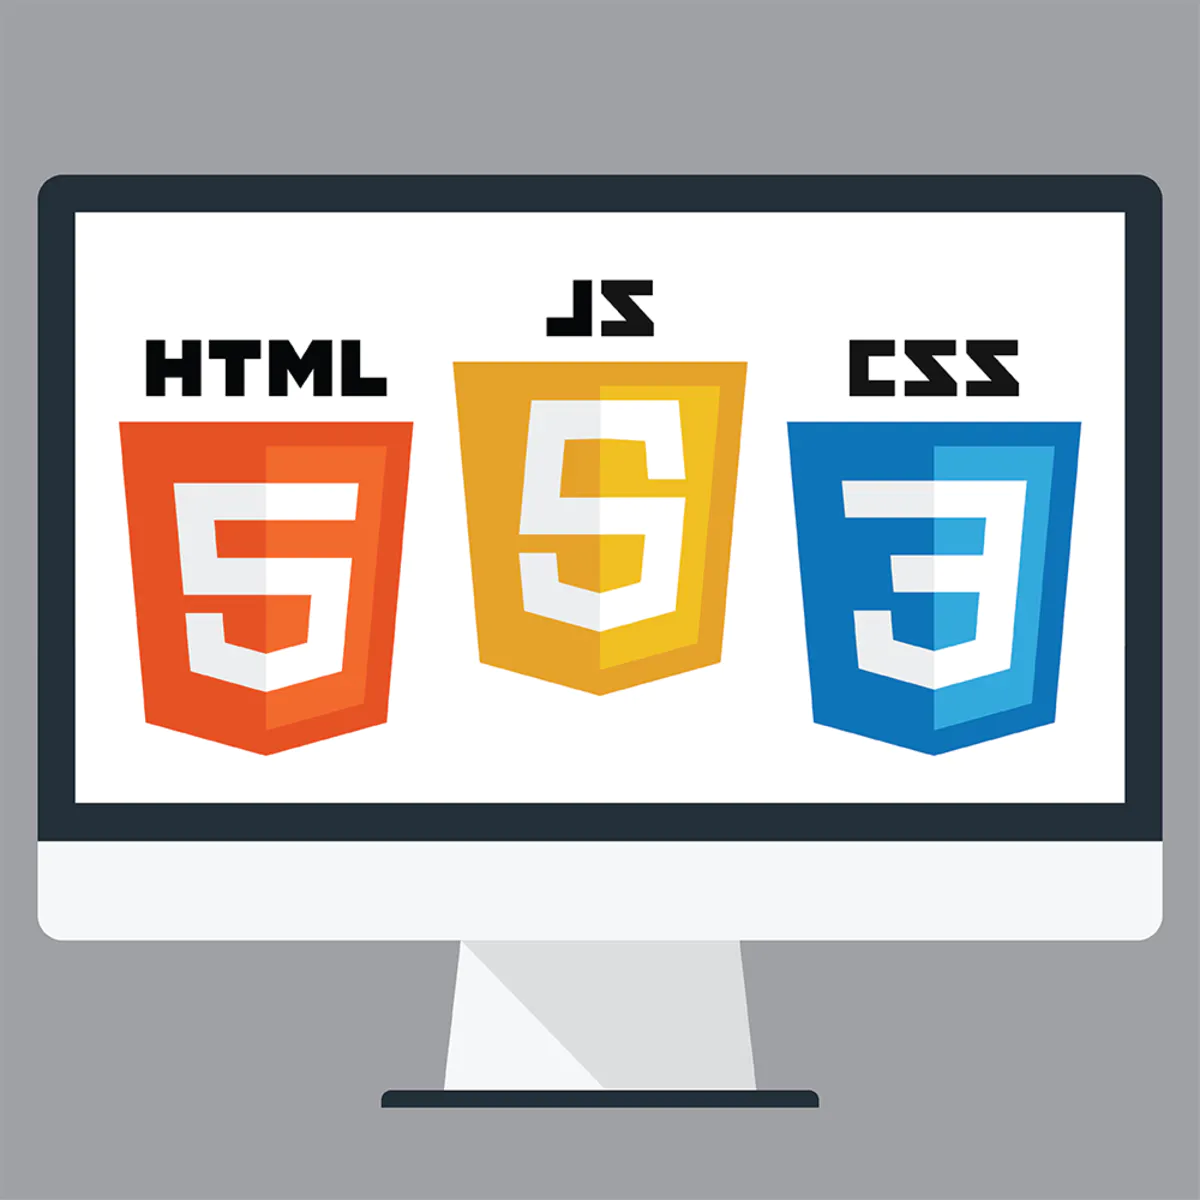 HTML, JS, and CSS logos